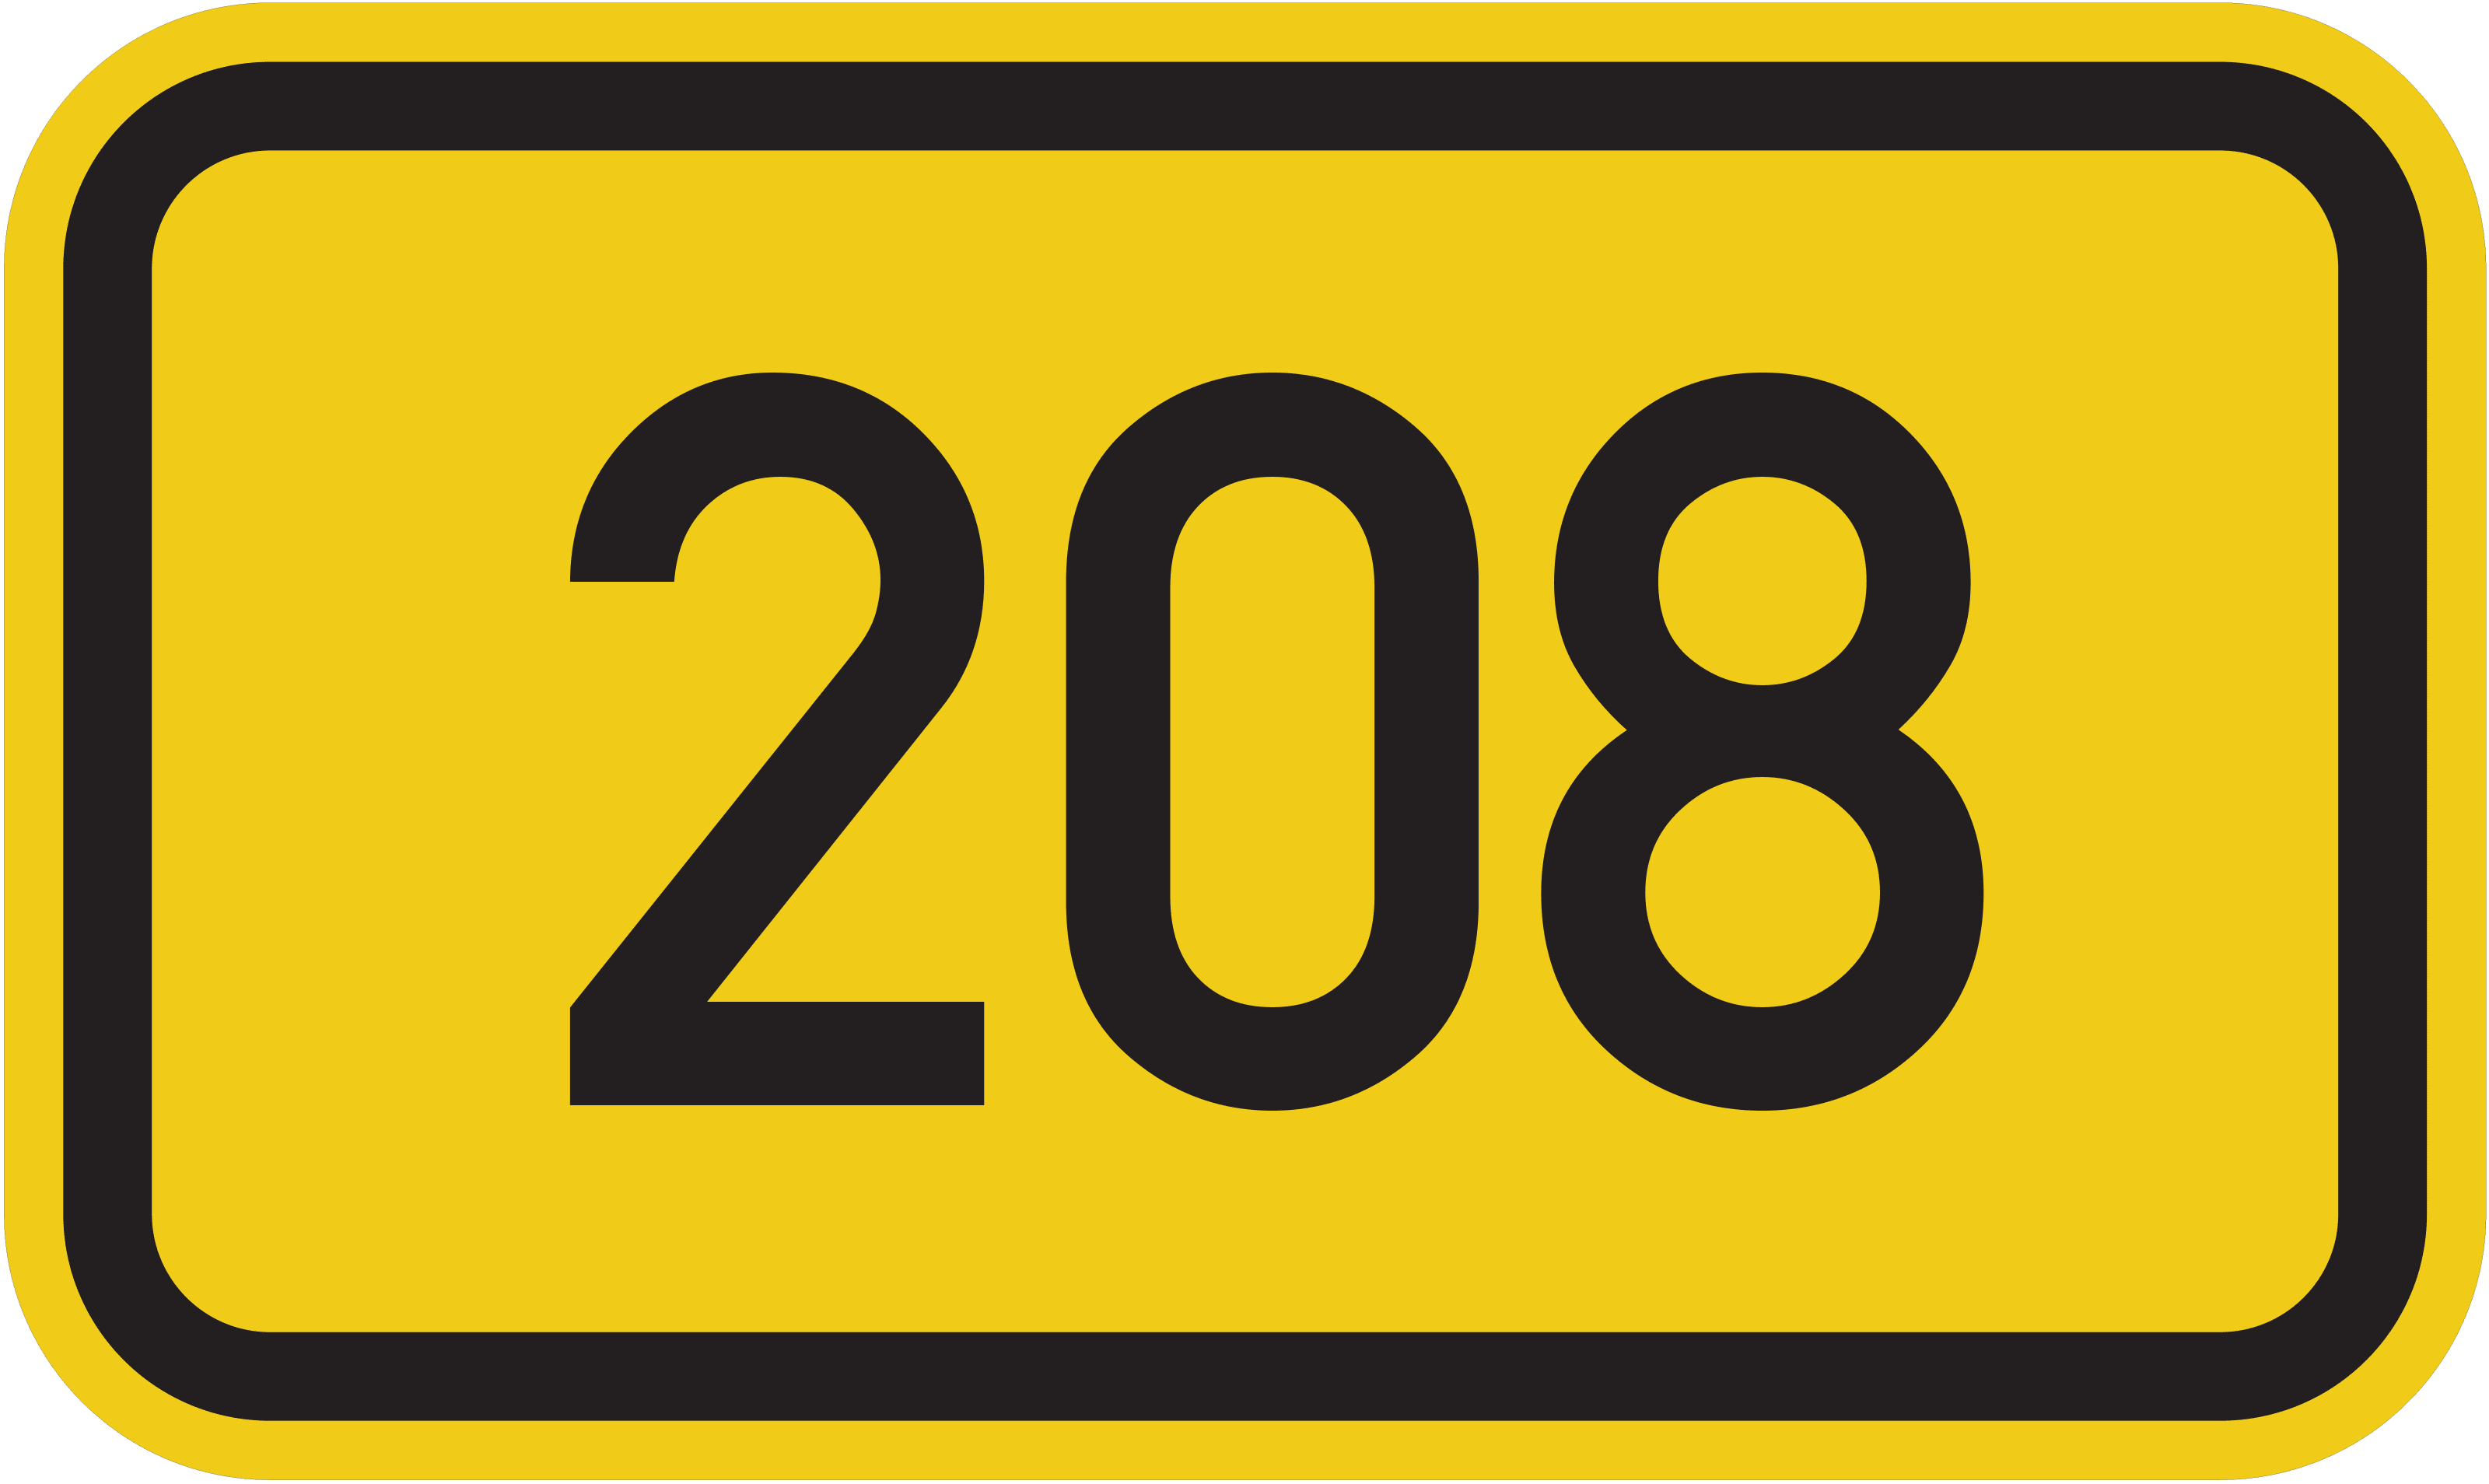 Bundesstraße B 208